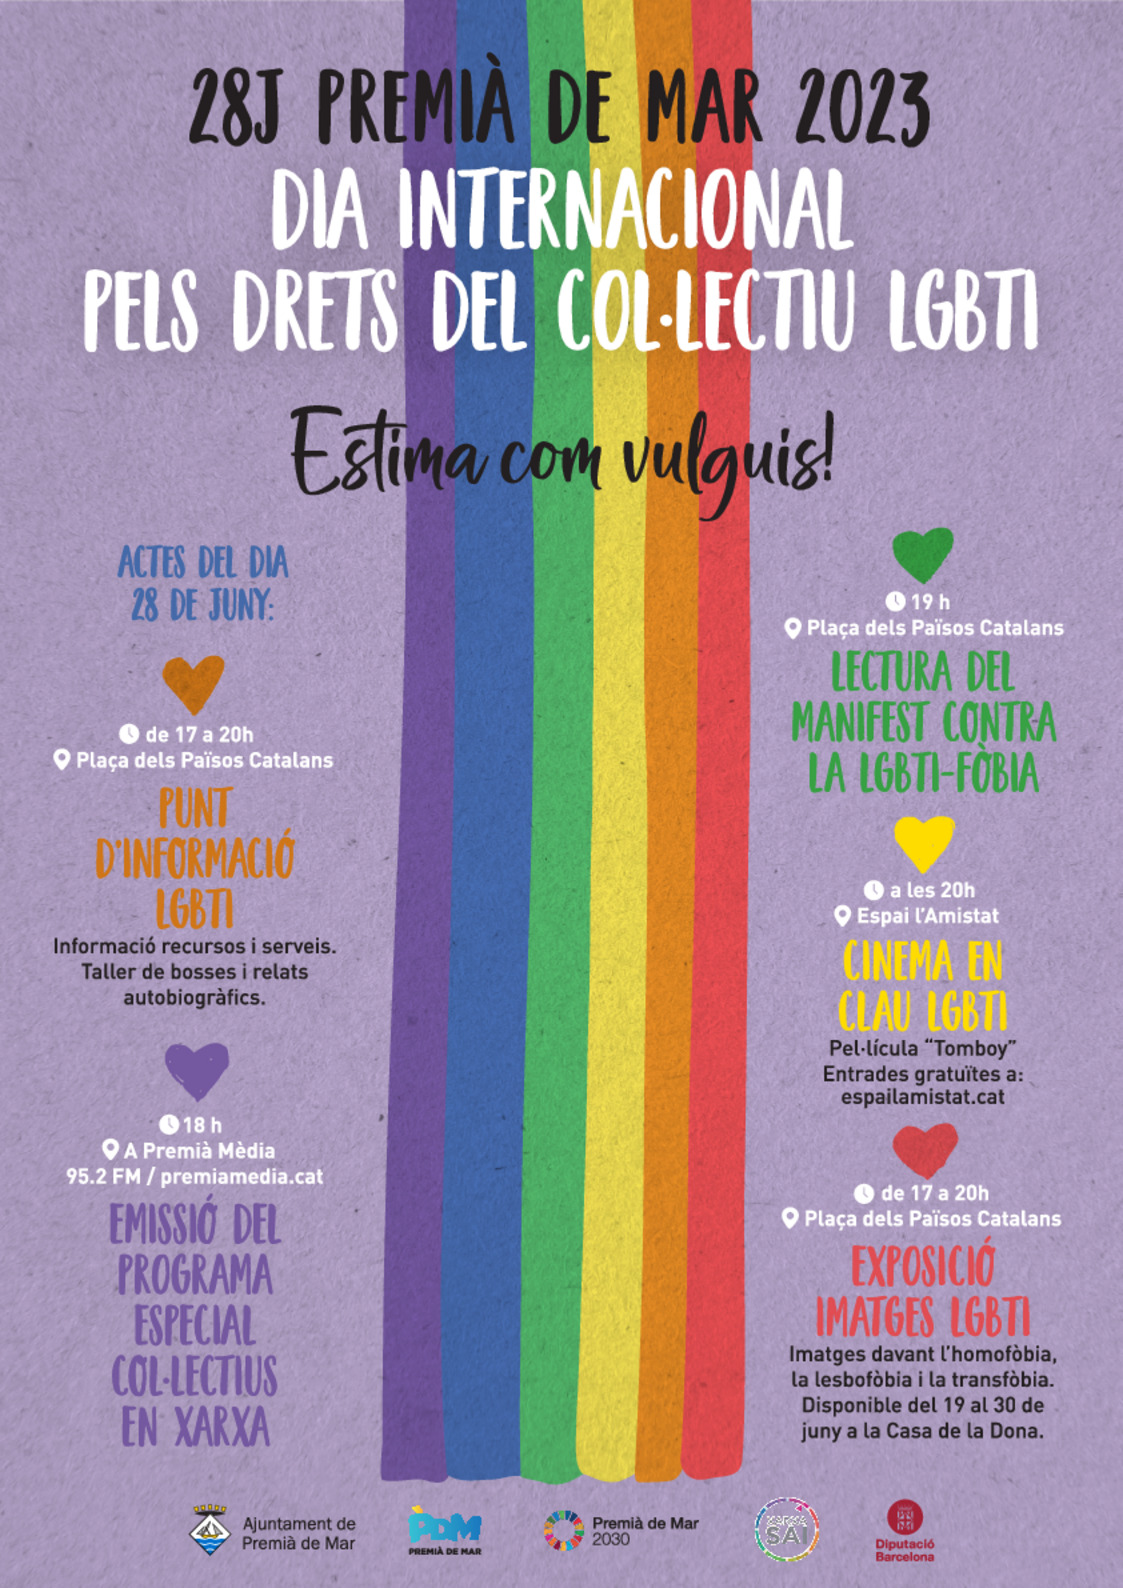 Lectura del Manifest contra la LGBTI-fbia